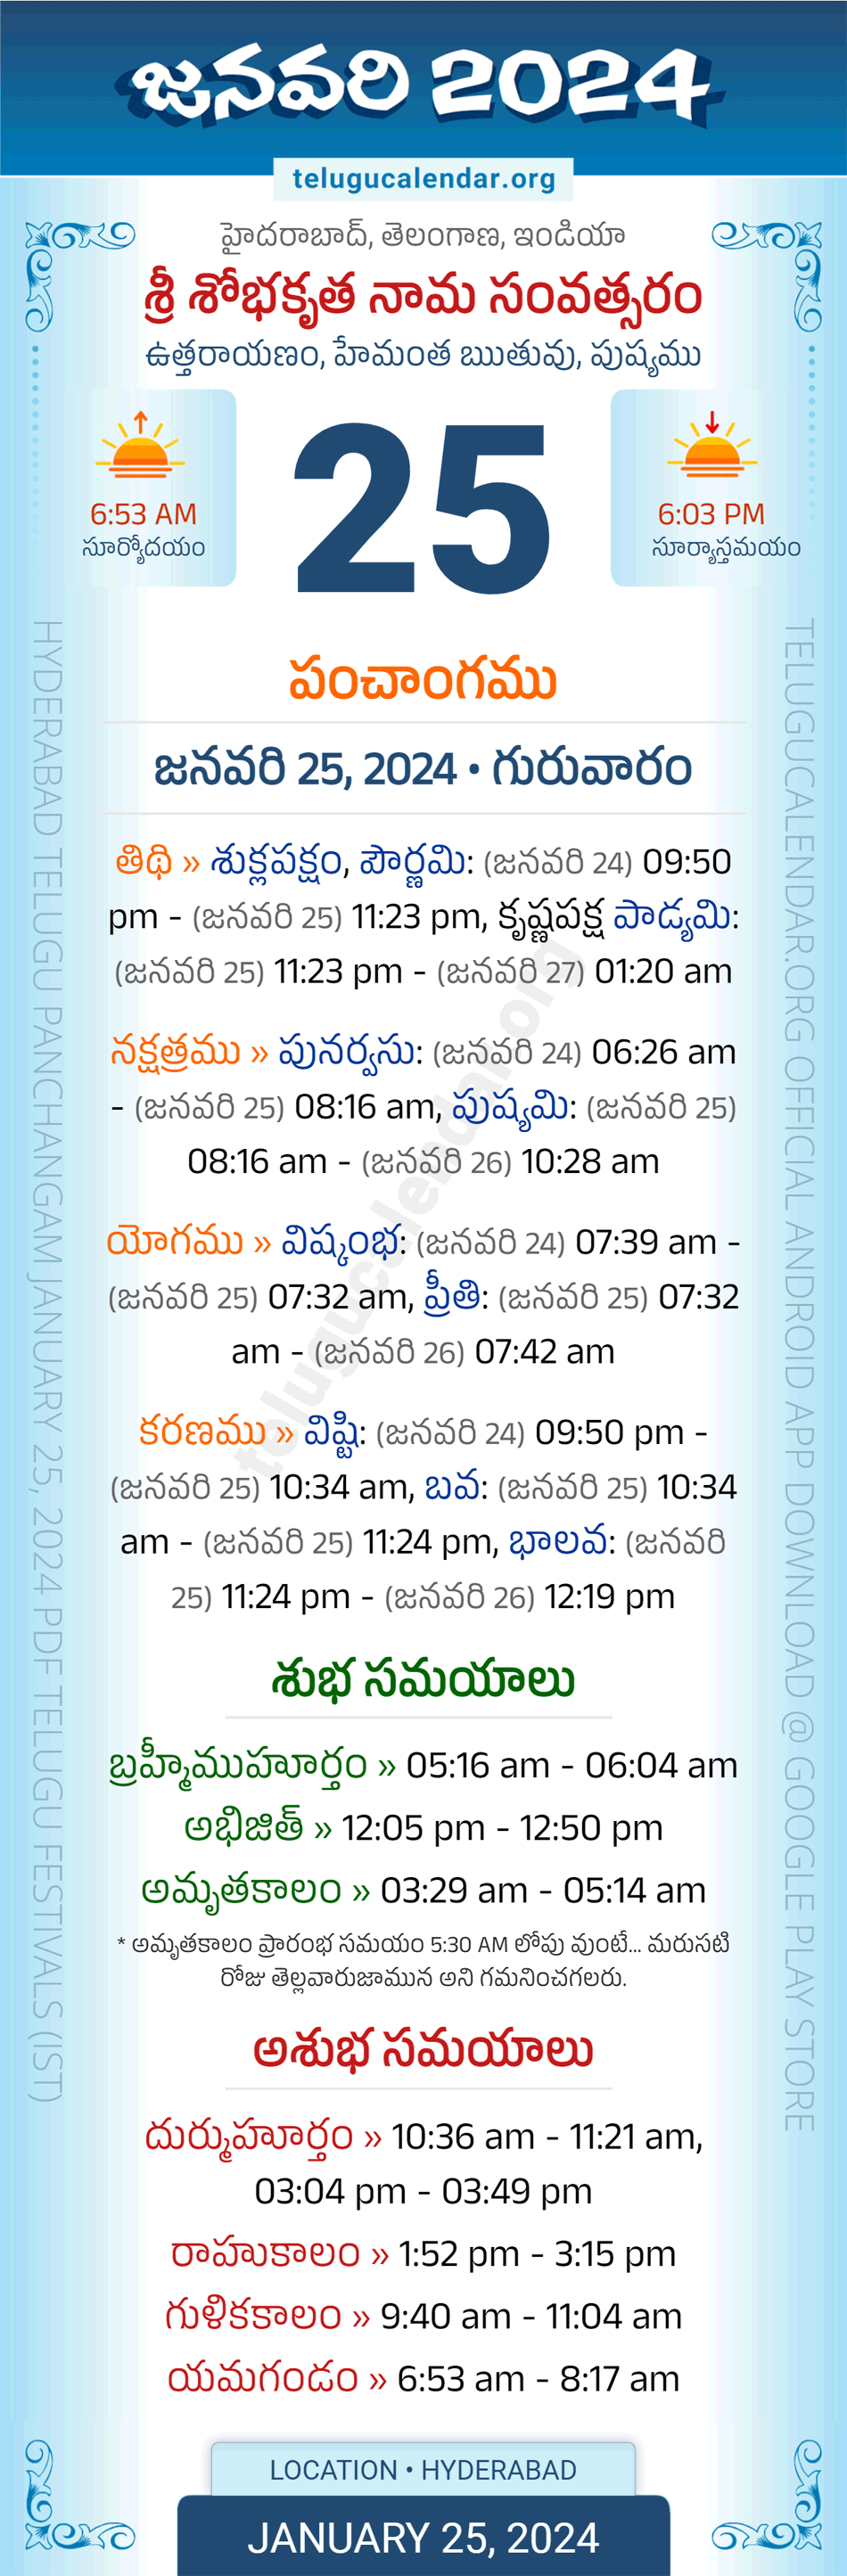 January 25, 2024 Telugu Calendar Panchangam Telangana